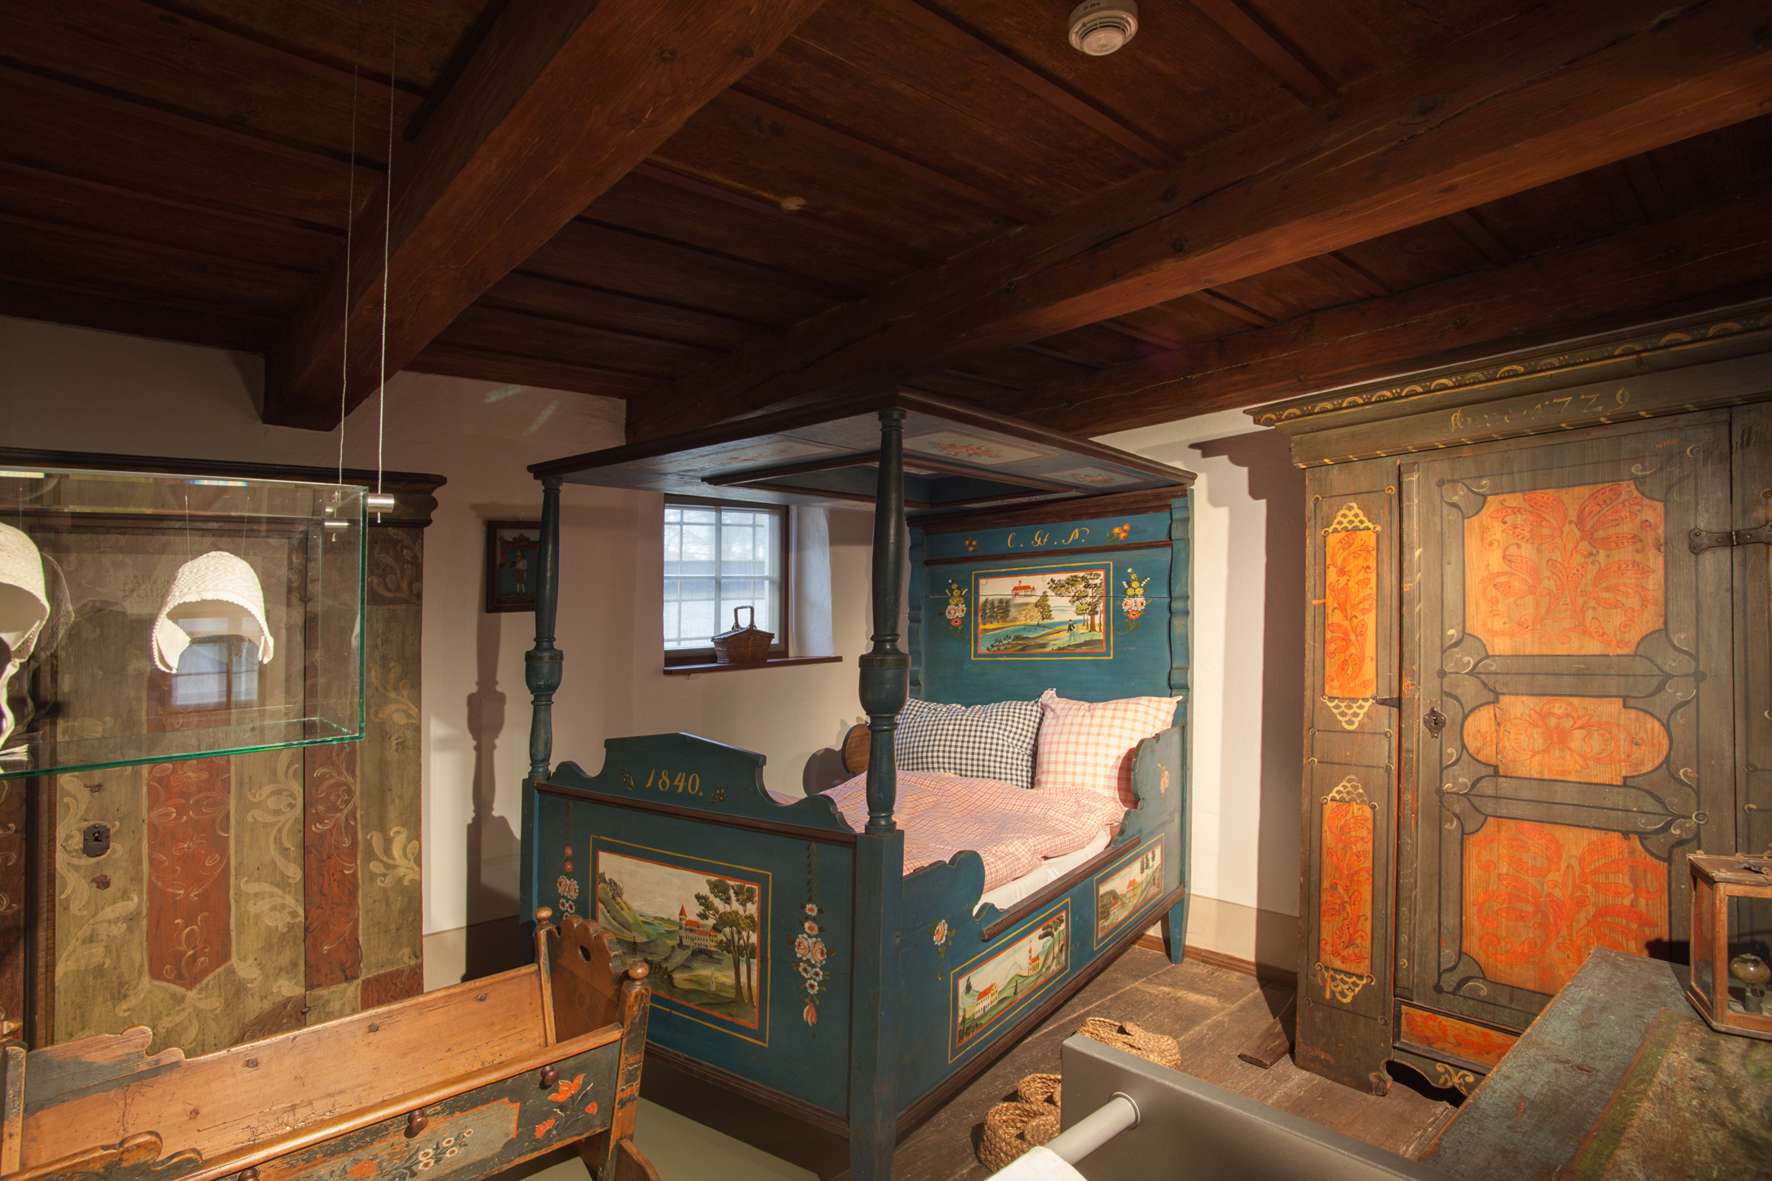 Inszenierung einer bäuerlich anmutenden Schlafstube mit handbemalten Holzmöbeln: ein Doppelbett mit Baldachin, eine Wiege und zwei Schränke stehen dicht beieinander. Der Raum ist niedrig, oben befindet sich eine Holzbalkendecke.